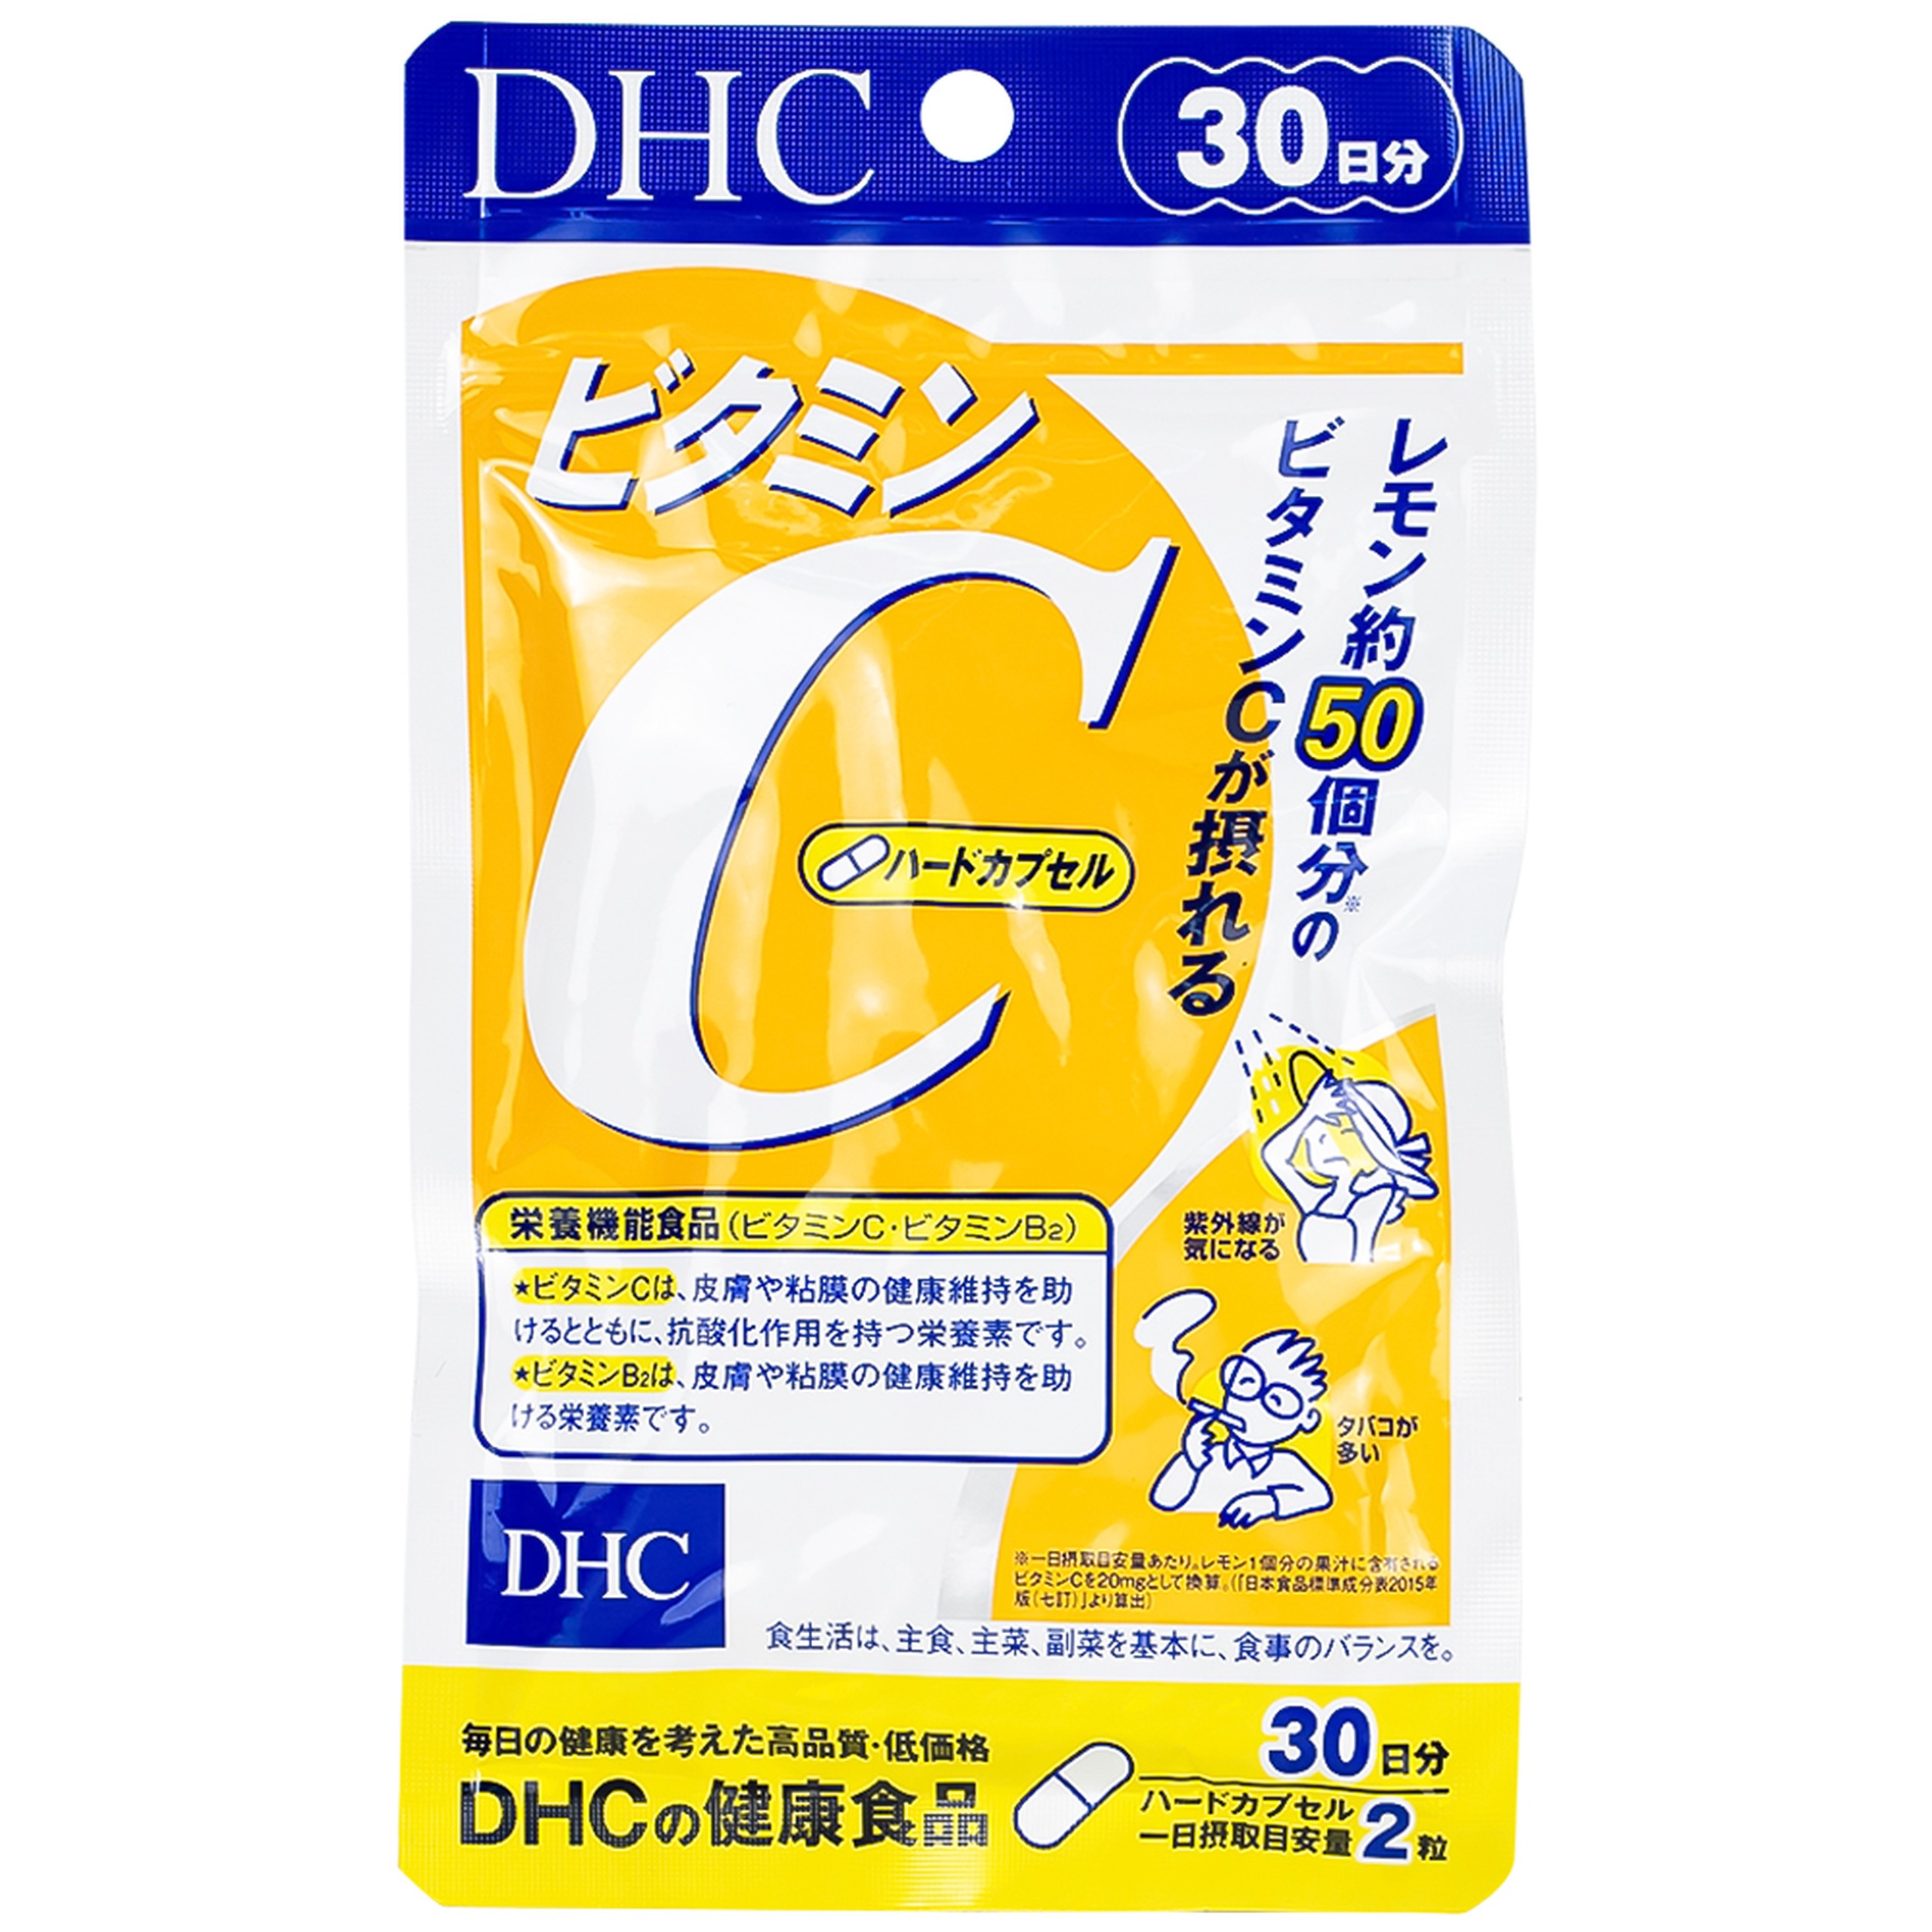 Viên uống DHC Vitamin C Hard bổ sung vitamin C, vitamin B2 cho cơ thể (60 viên)